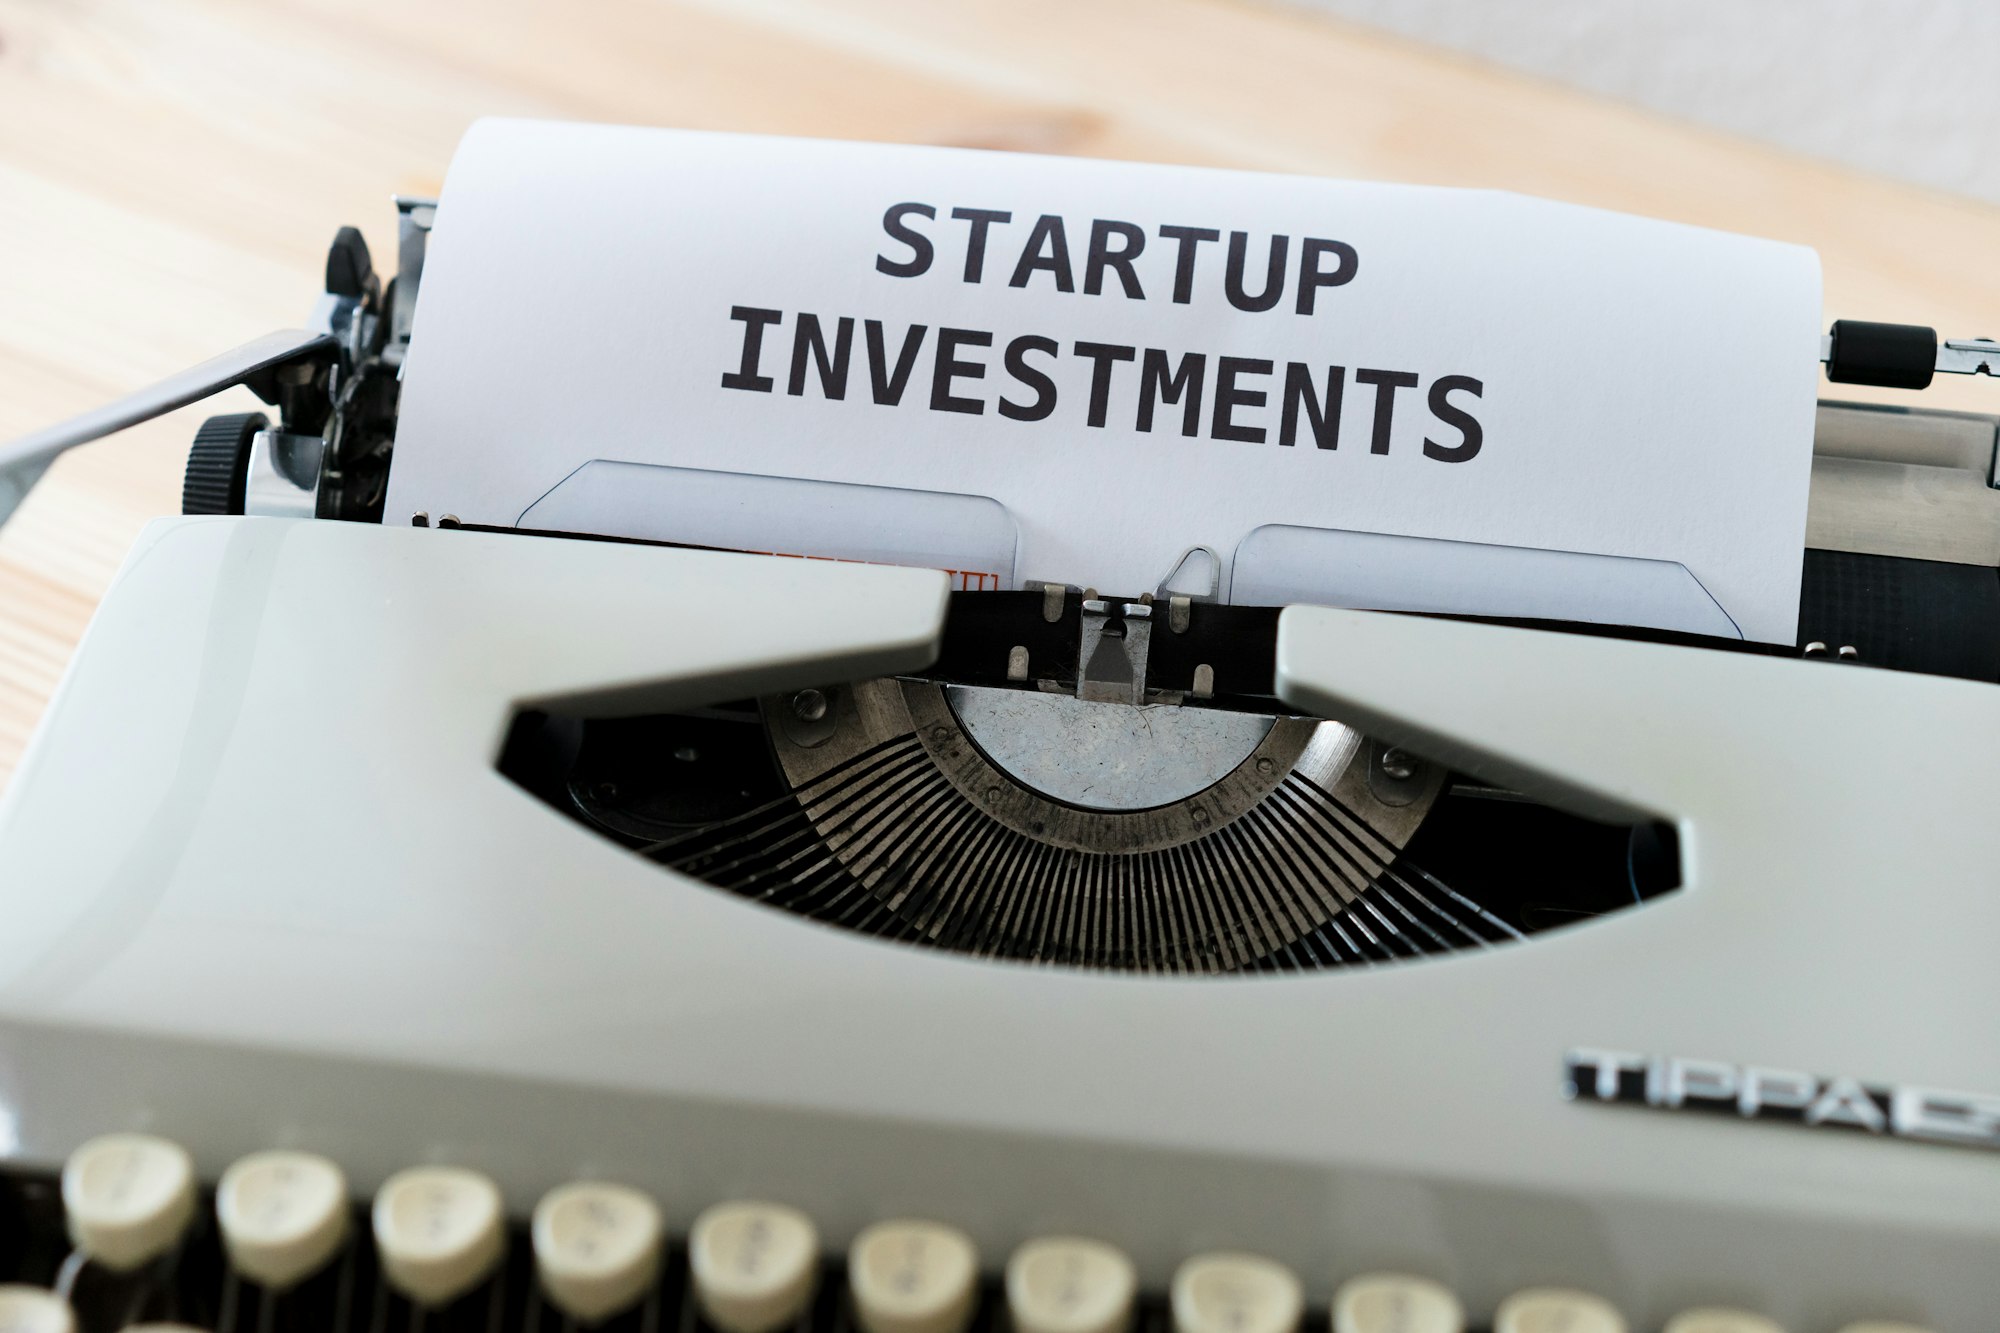 Startuplara her kesimden yatırım yapılmaya başlandı